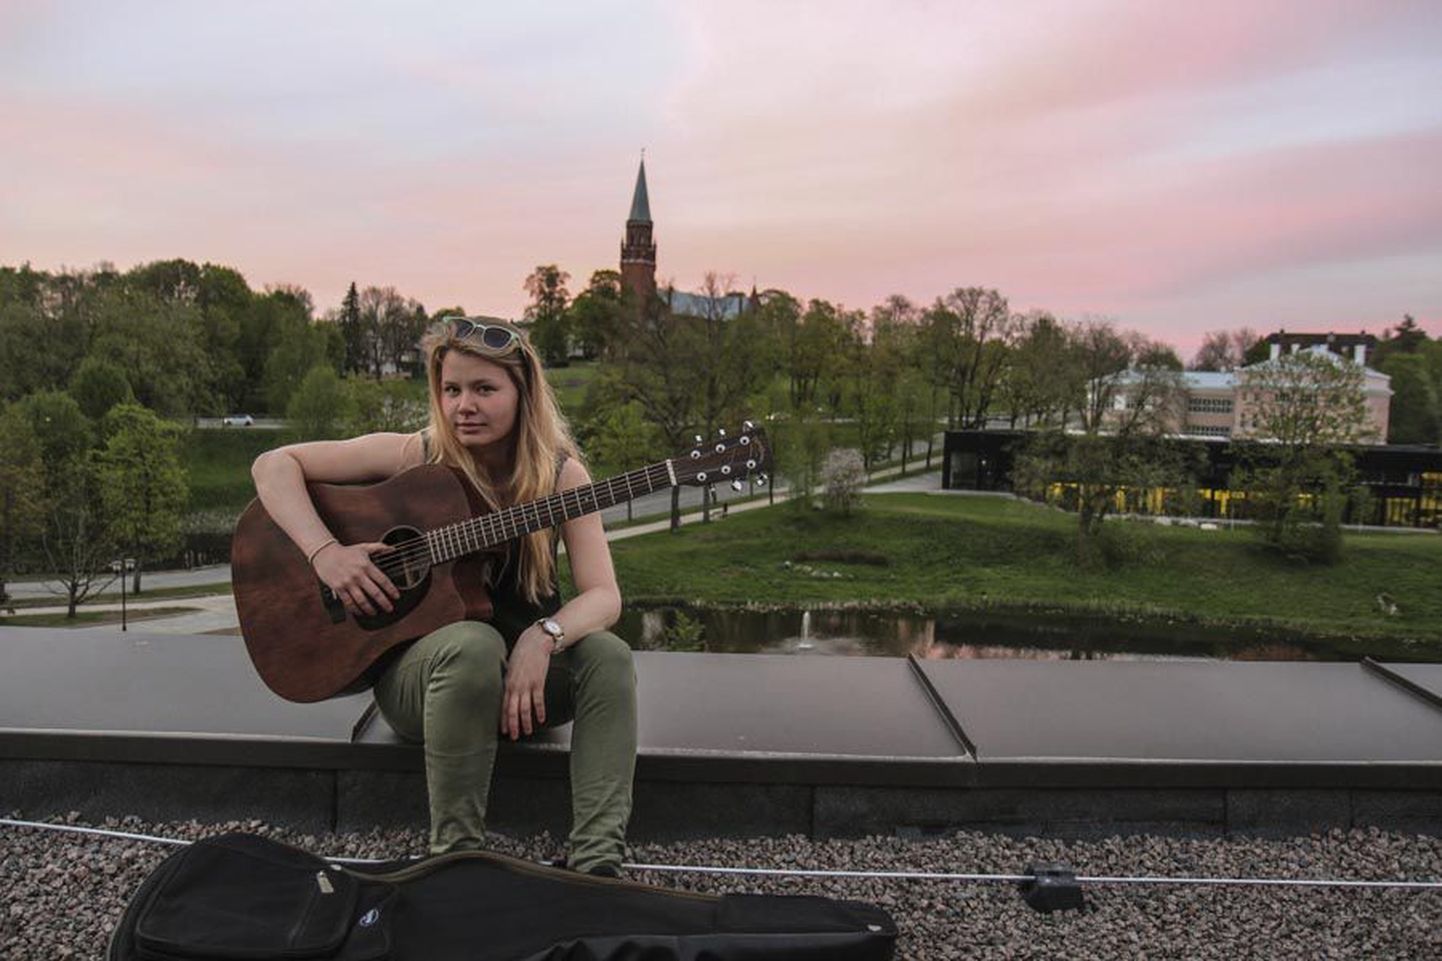 16-aastane Haldi Välimäe astub reede hilisõhtul ajaloo esimese artistina Ugala katusele, et esitleda publikule oma debüütplaati.